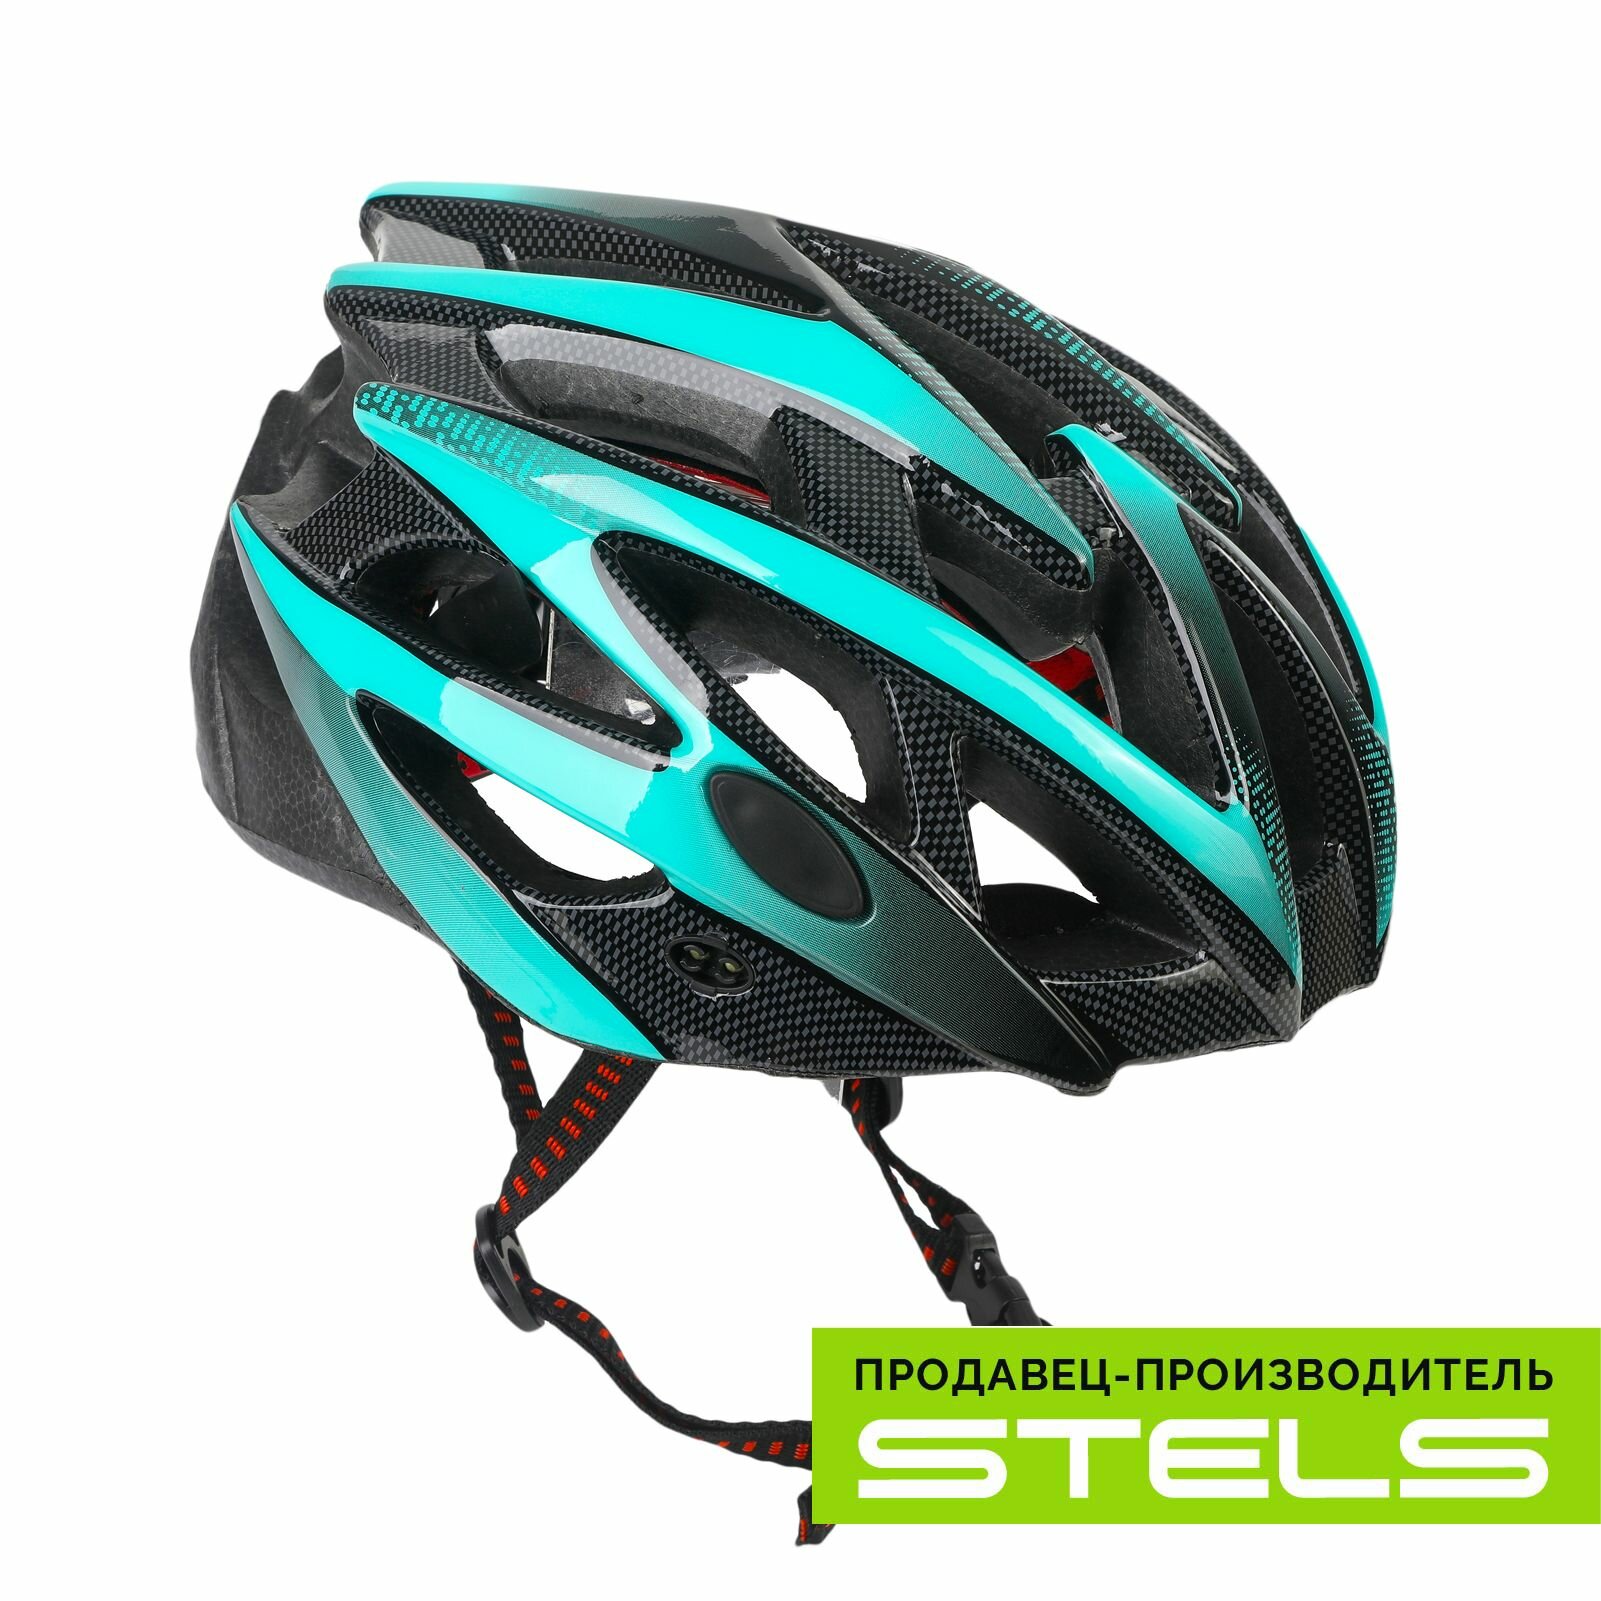 Шлем защитный для катания на велосипеде FSD-HL056 (in-mold) бирюзово-чёрный, размер L NEW